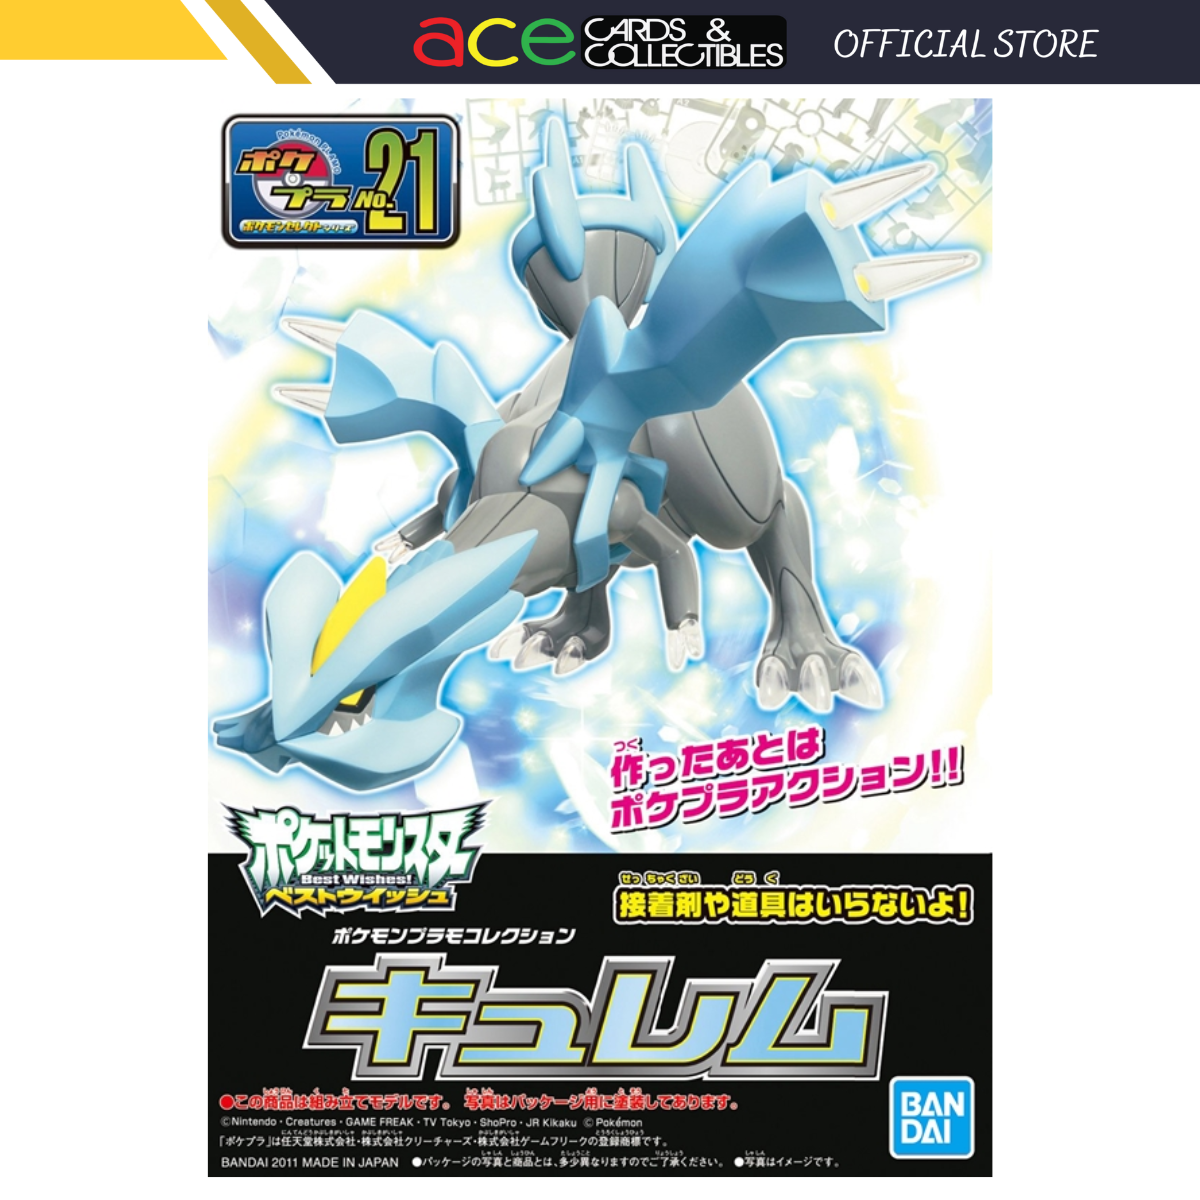 Pokémon Plastic Model Collection No.21 "Kyurem"-Bandai-Ace Cards & Collectibles